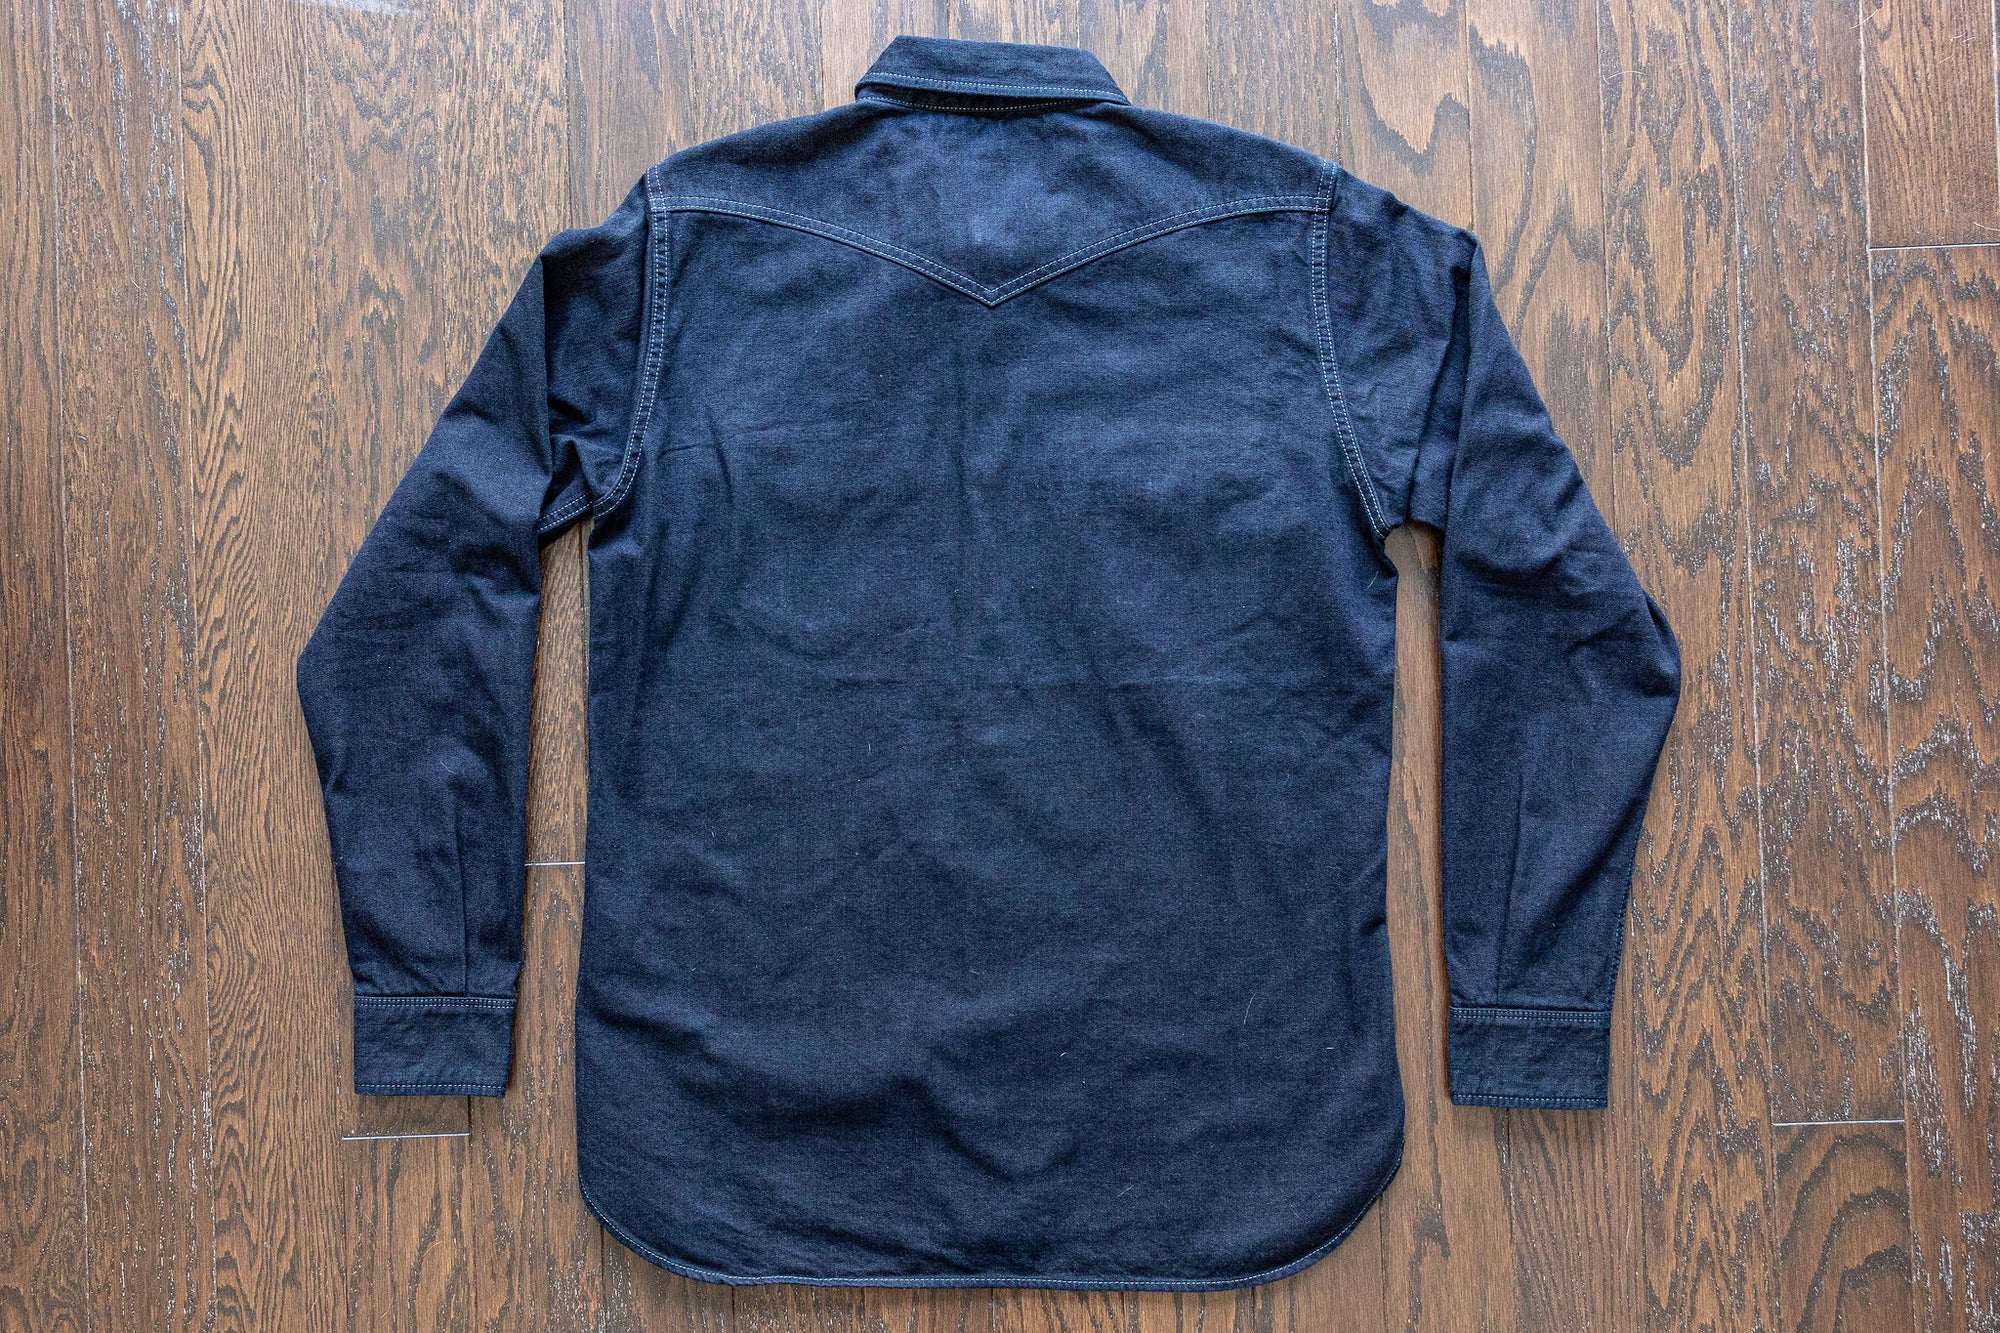 West Major - 6 oz. Organic Indigo Denim Western Shirt – The Rugged Society